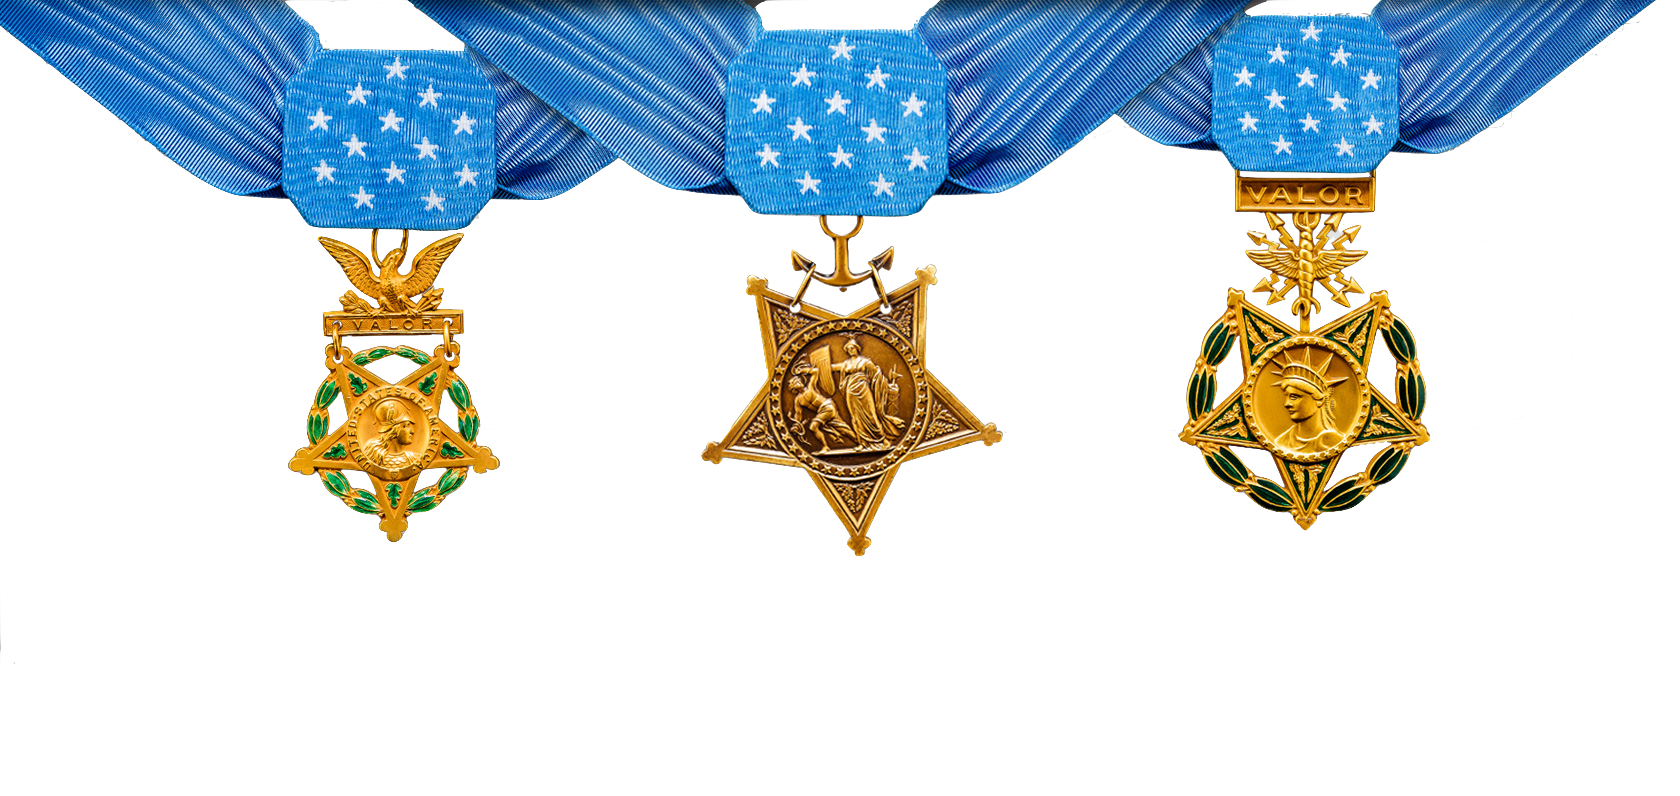 The most medals. Medal of Honor медаль США. Медаль почета конгресса США. Медаль почёта (Medal of Honor). Высшая награда США медаль почета.